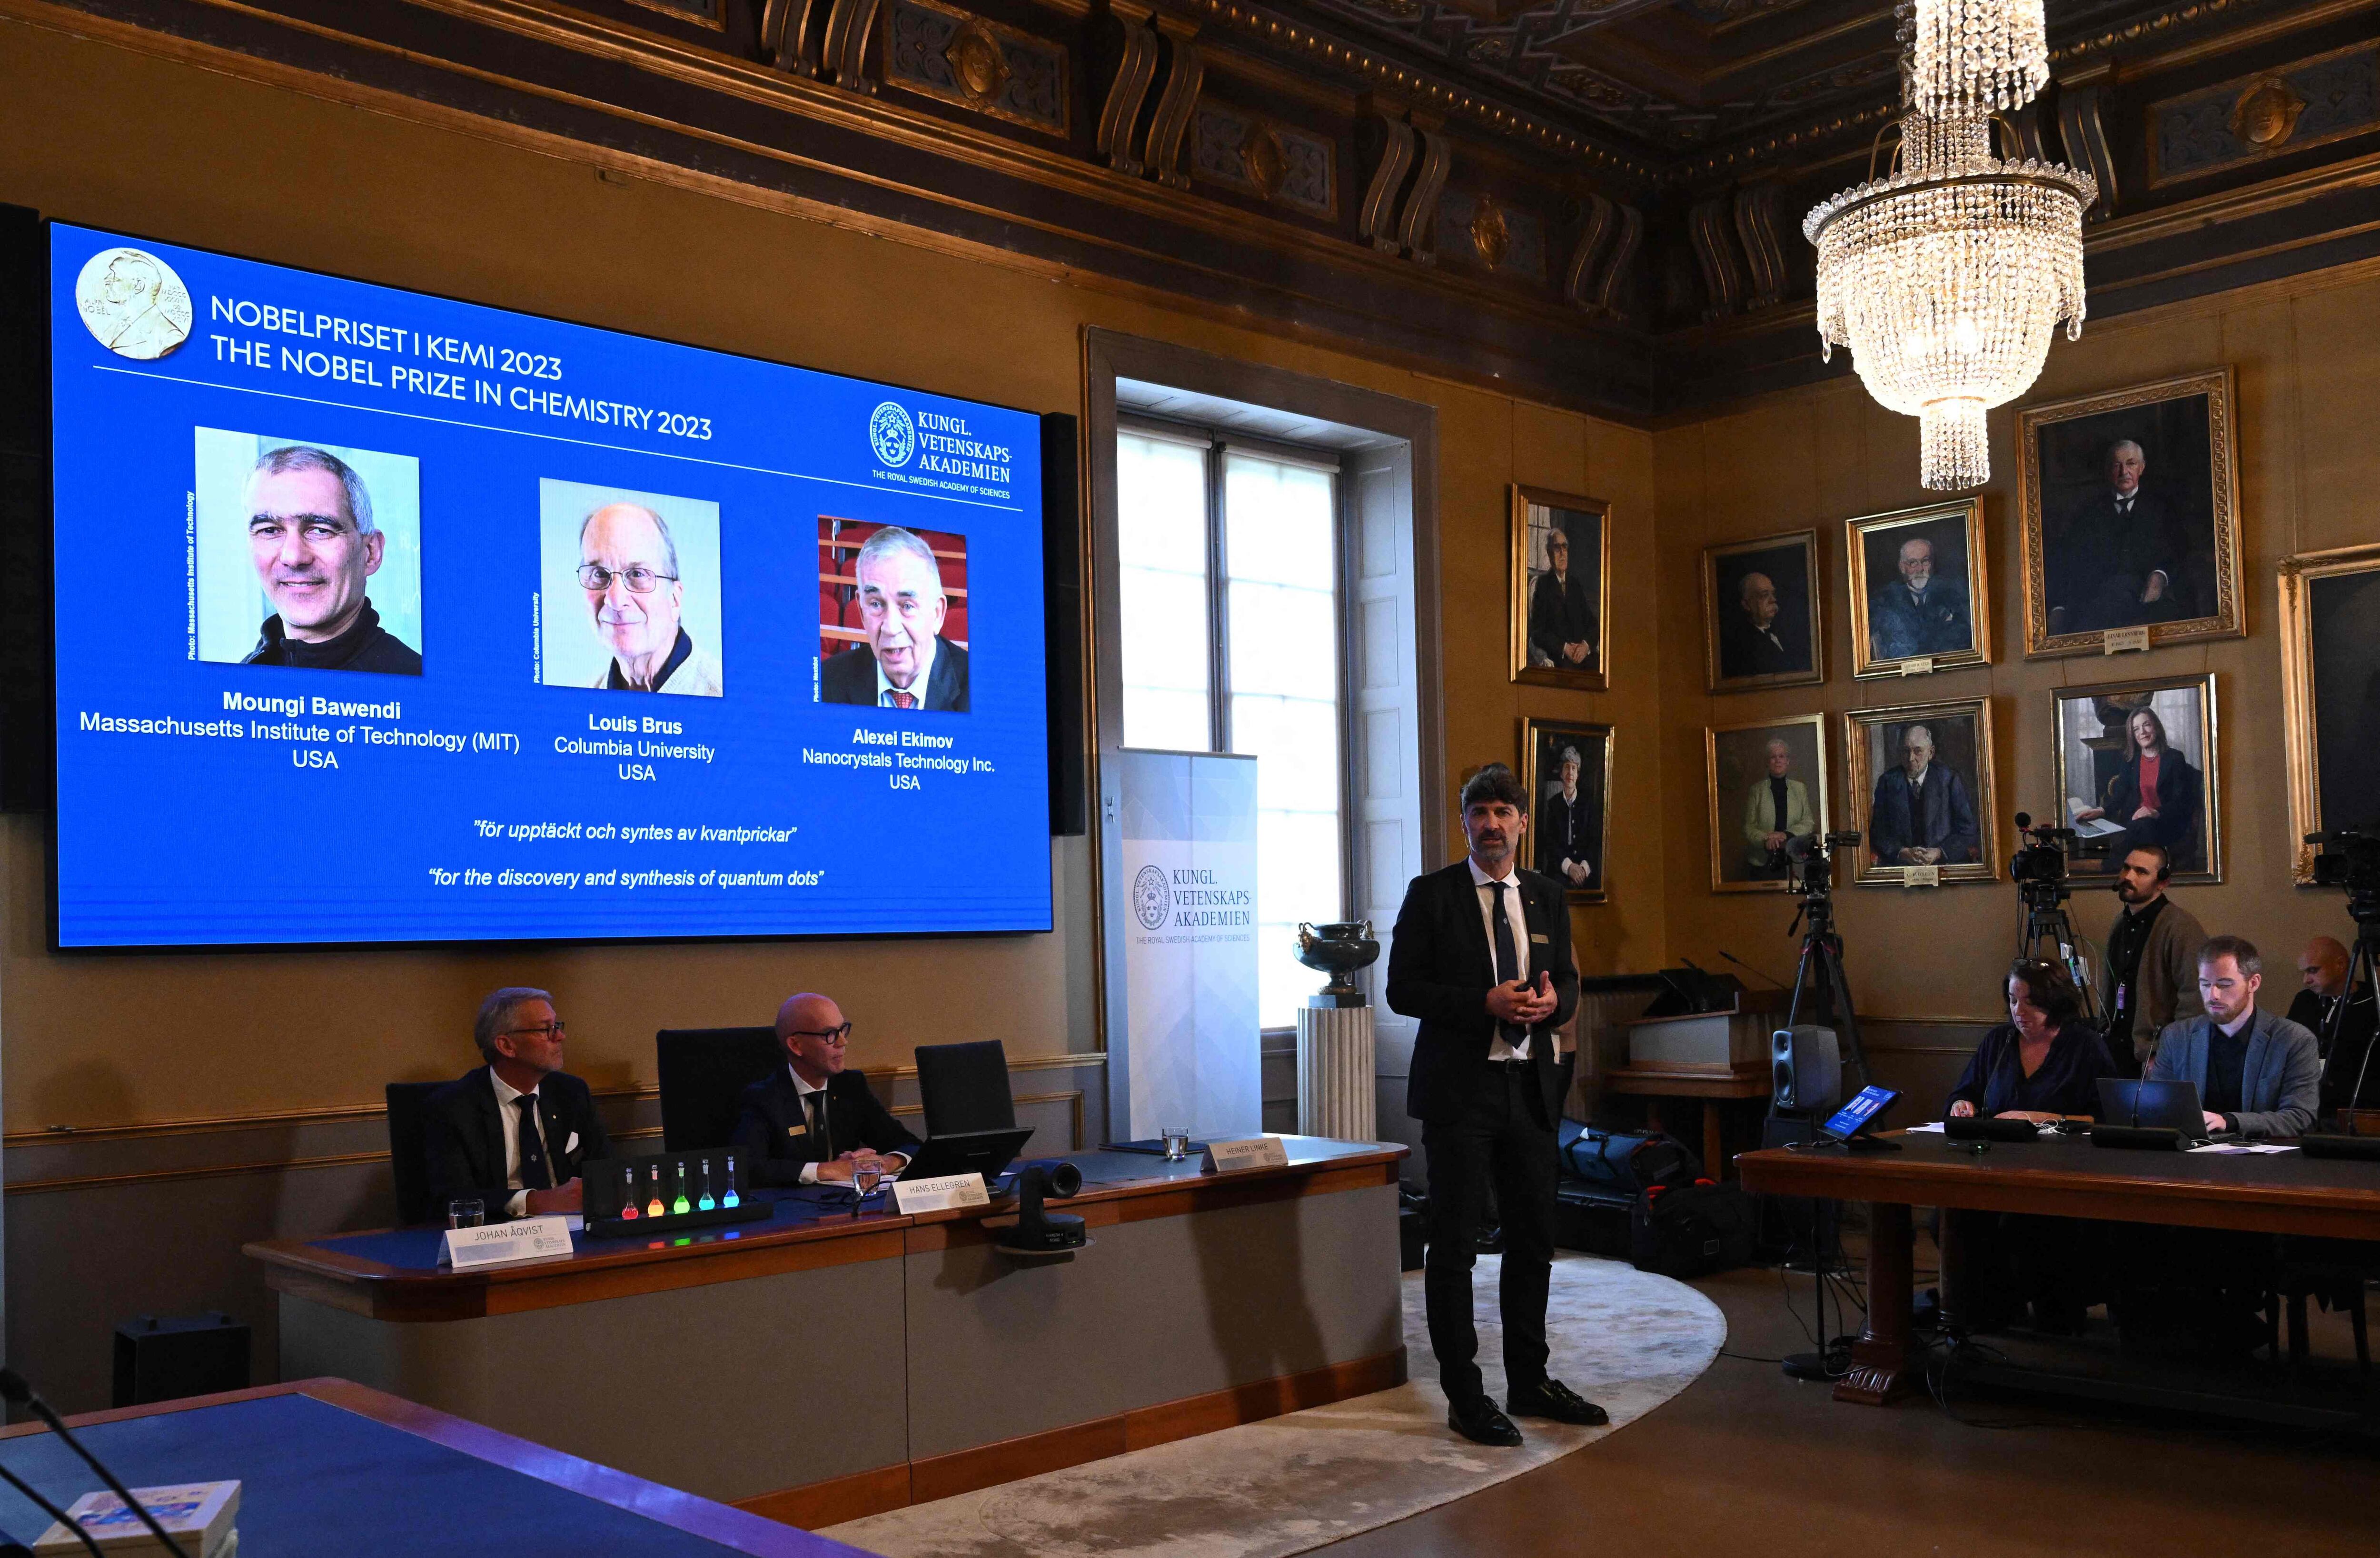 Momento en el que se han anunciado los ganadores del Nobel de Química 2023, este martes en Estocolmo.